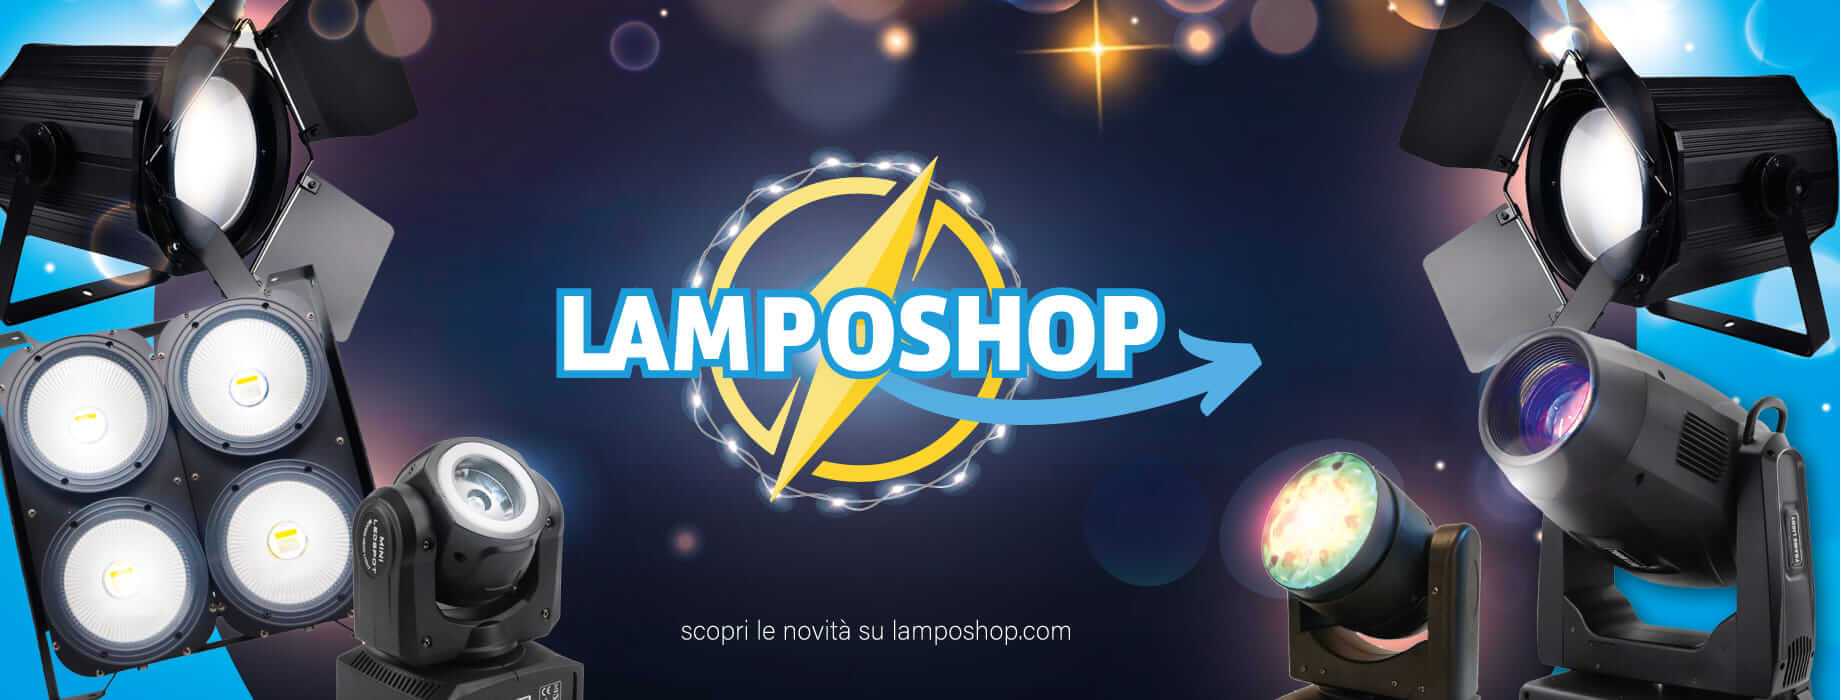 Benvenuto su Lamposhop.com